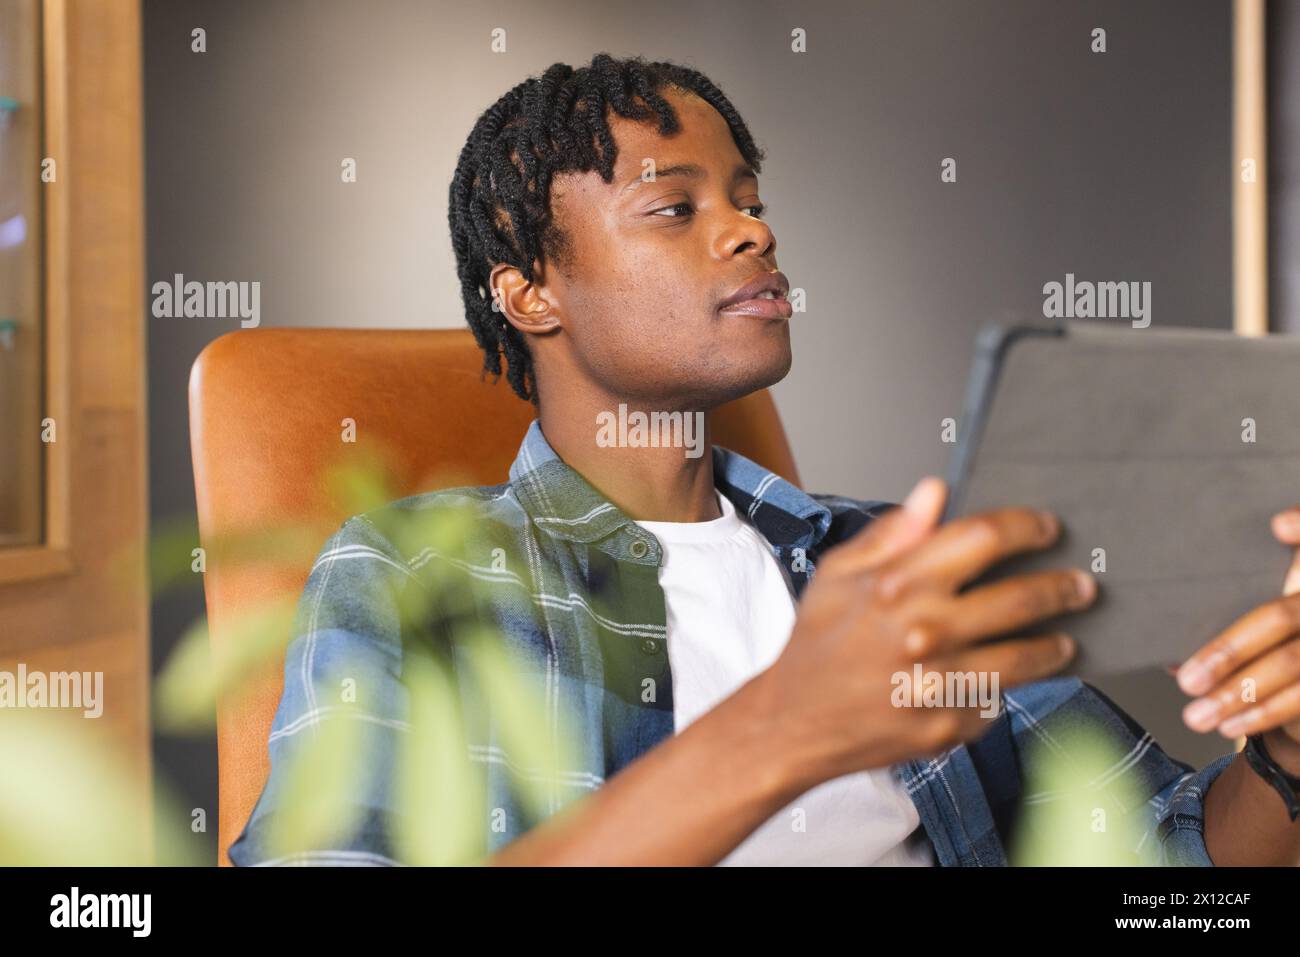 Uomo afroamericano che tiene un tablet, guarda lo schermo in un moderno ufficio aziendale. Ha i capelli corti intrecciati, indossa una camicia a quadri, rilassato su una sedia Foto Stock